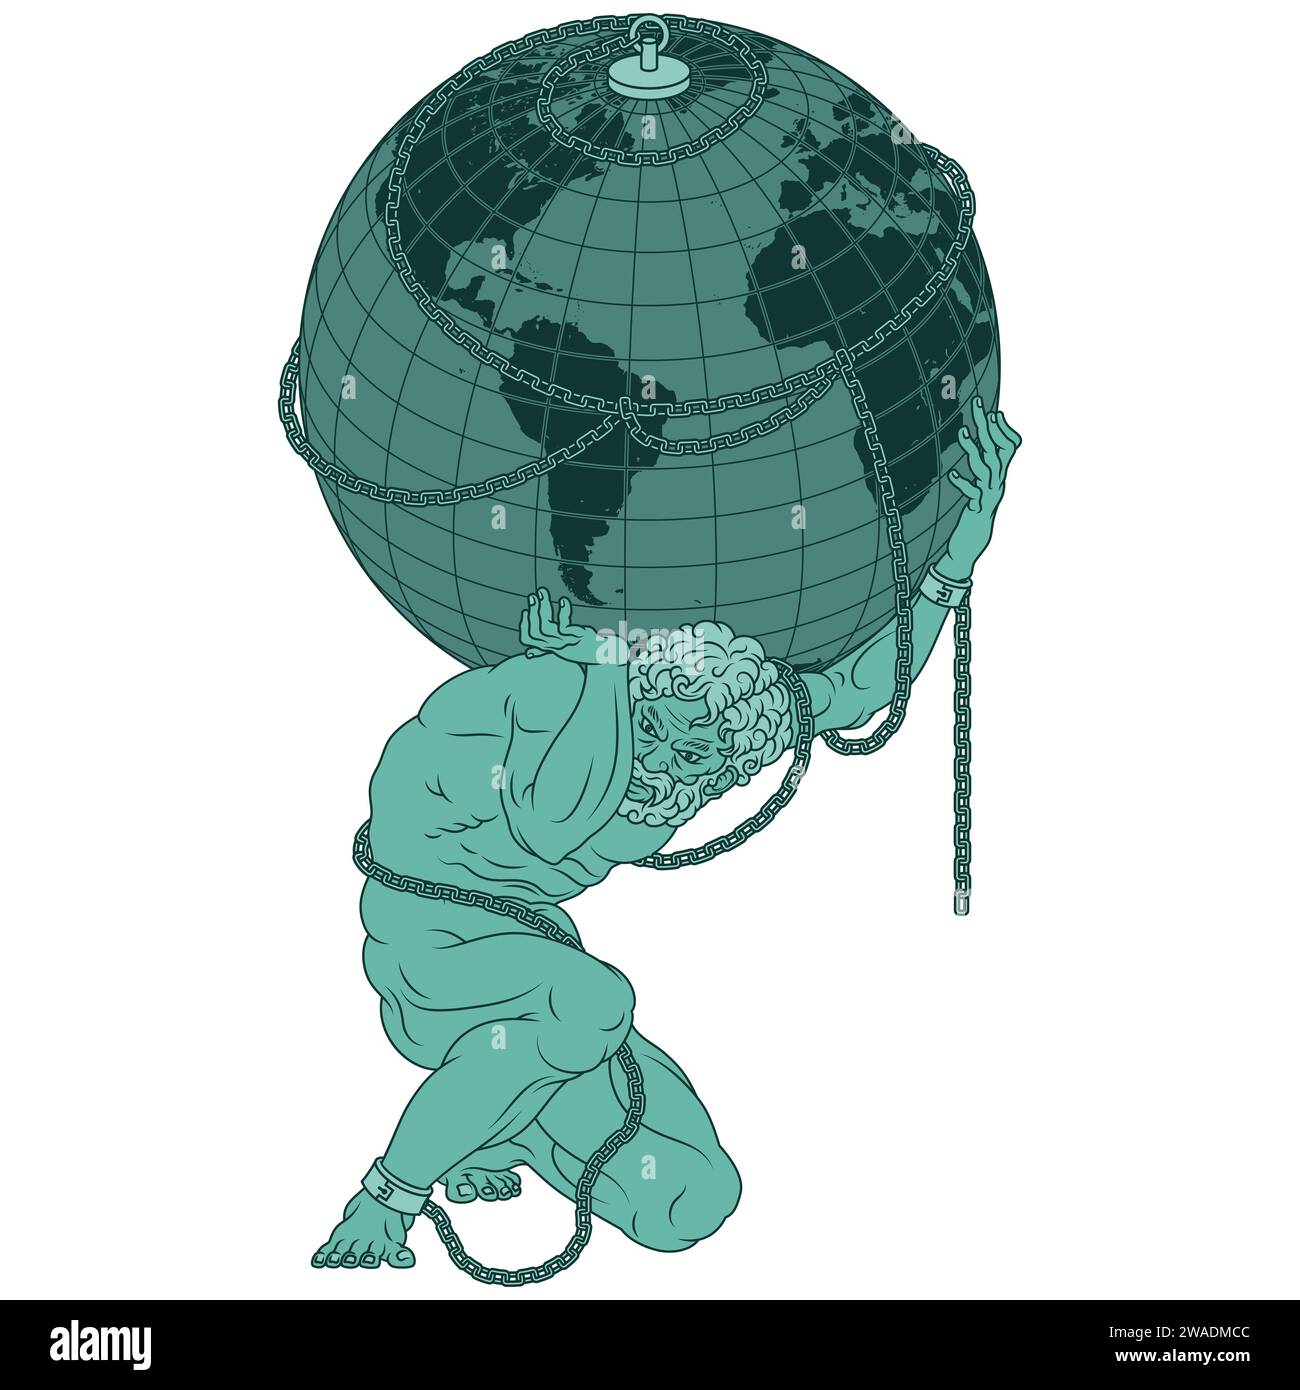 Conception vectorielle du titan Atlas enchaîné à la planète Terre, titan de la mythologie grecque tenant la sphère terrestre Illustration de Vecteur